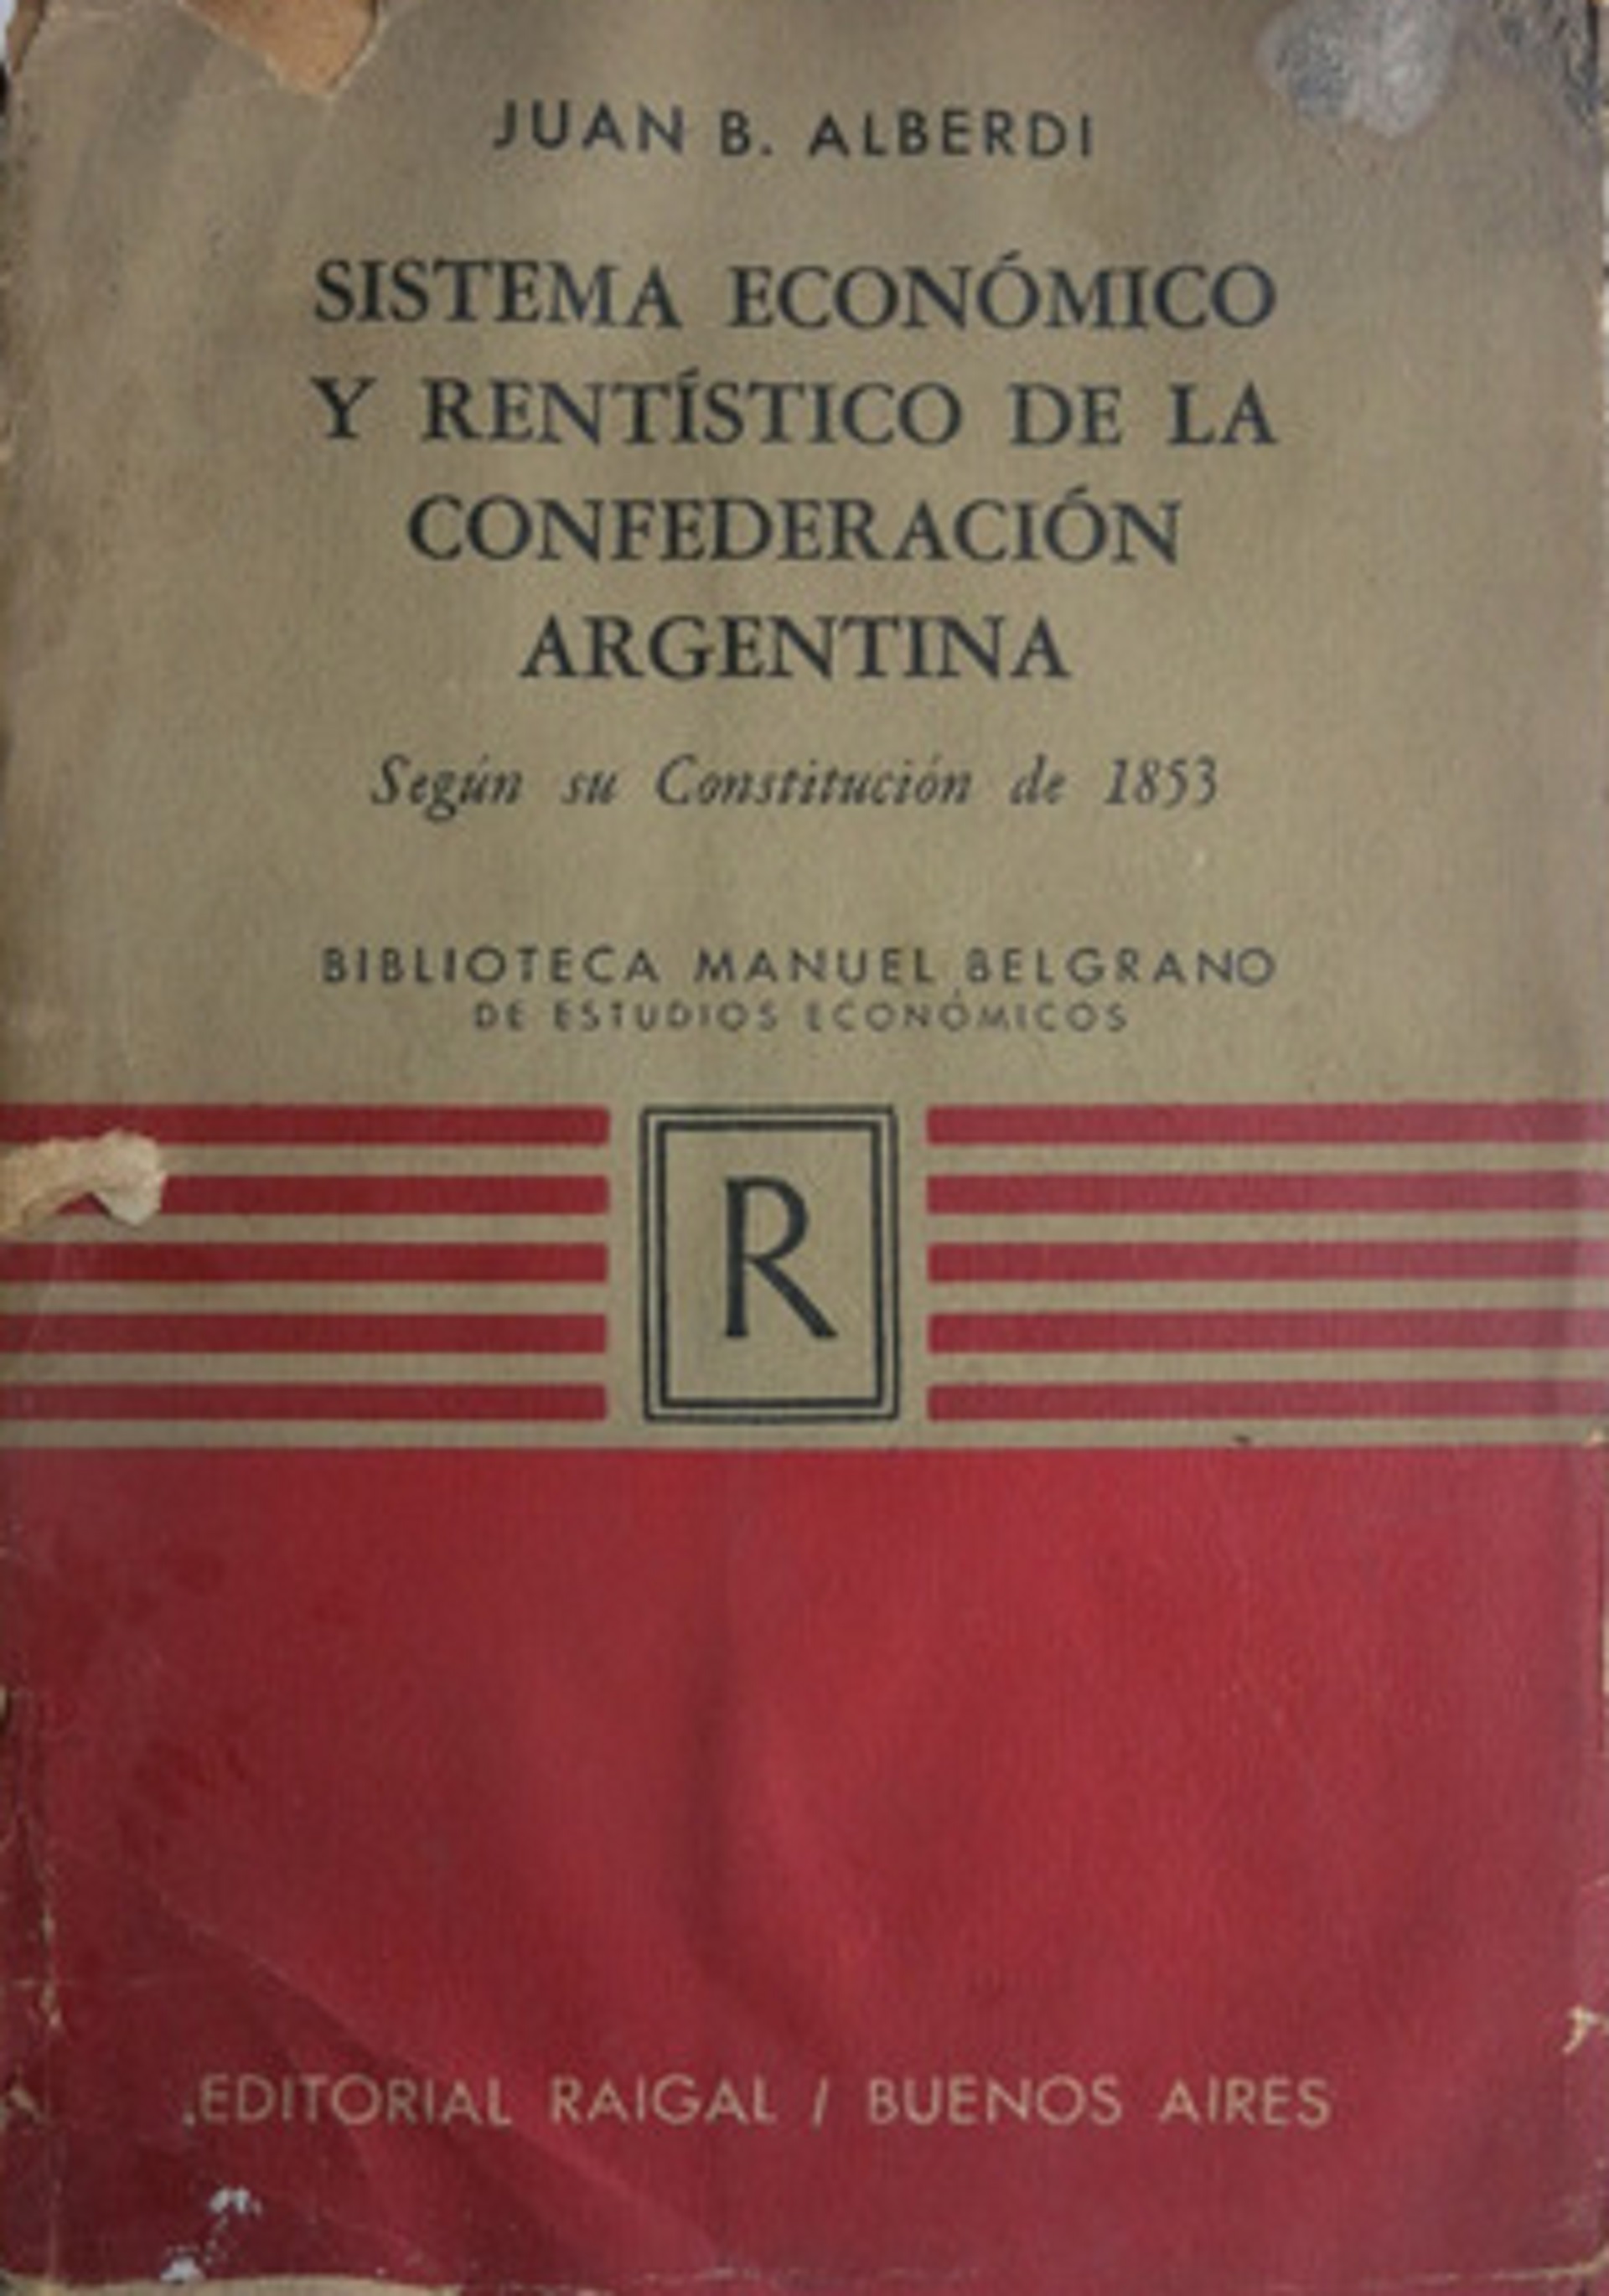 Sistema económico y rentístico de la Confederación Argentina según la Constitución de 1853